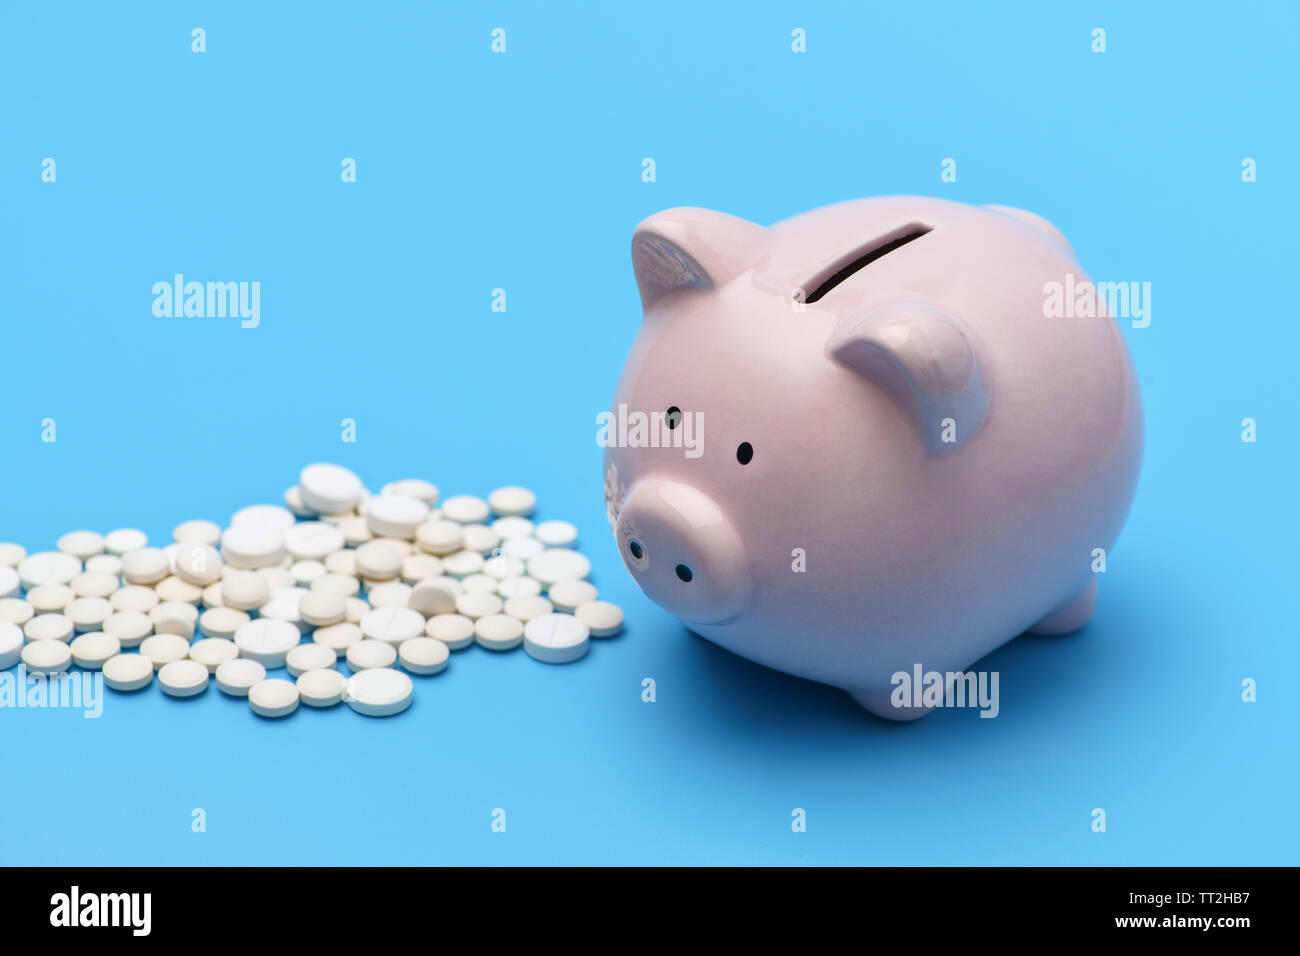 Pink Piggy Bank dans la forme d'un cochon se trouve sur la droite, sur fond bleu sur la gauche sont rondes pilules blanches. Banque D'Images